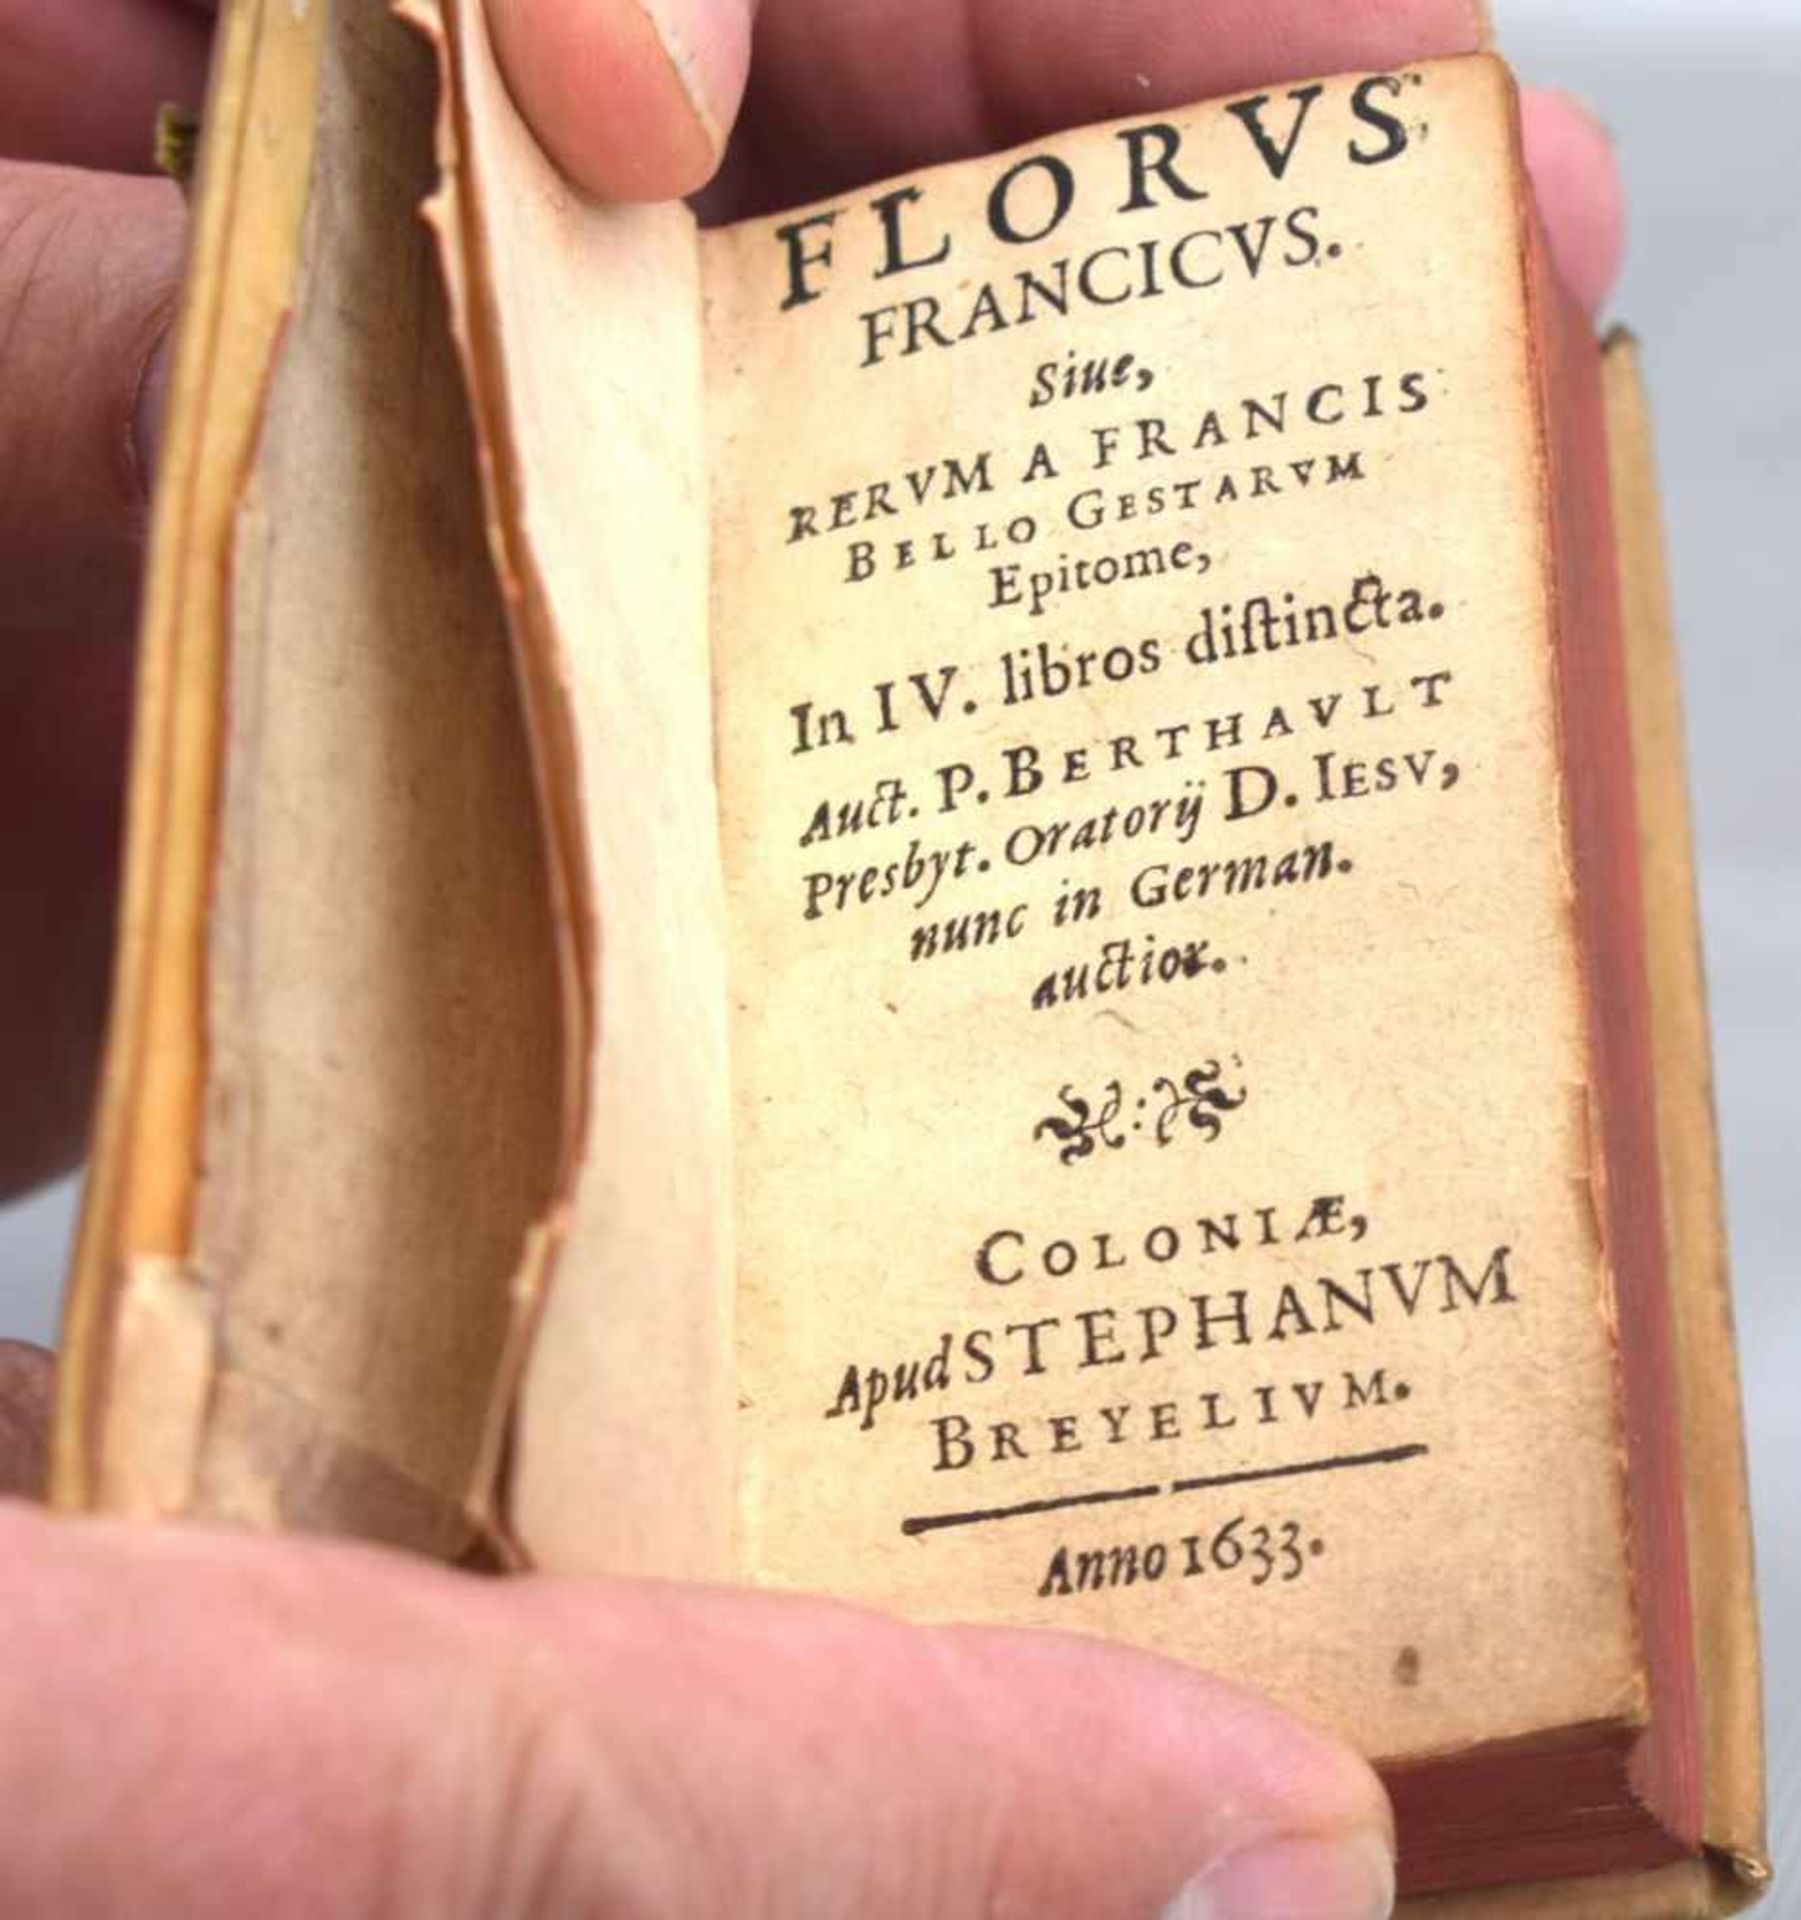 Florus FrancicusAnno 1633, in Schweinsleder gebunden, 5,5 X 9,5 cm